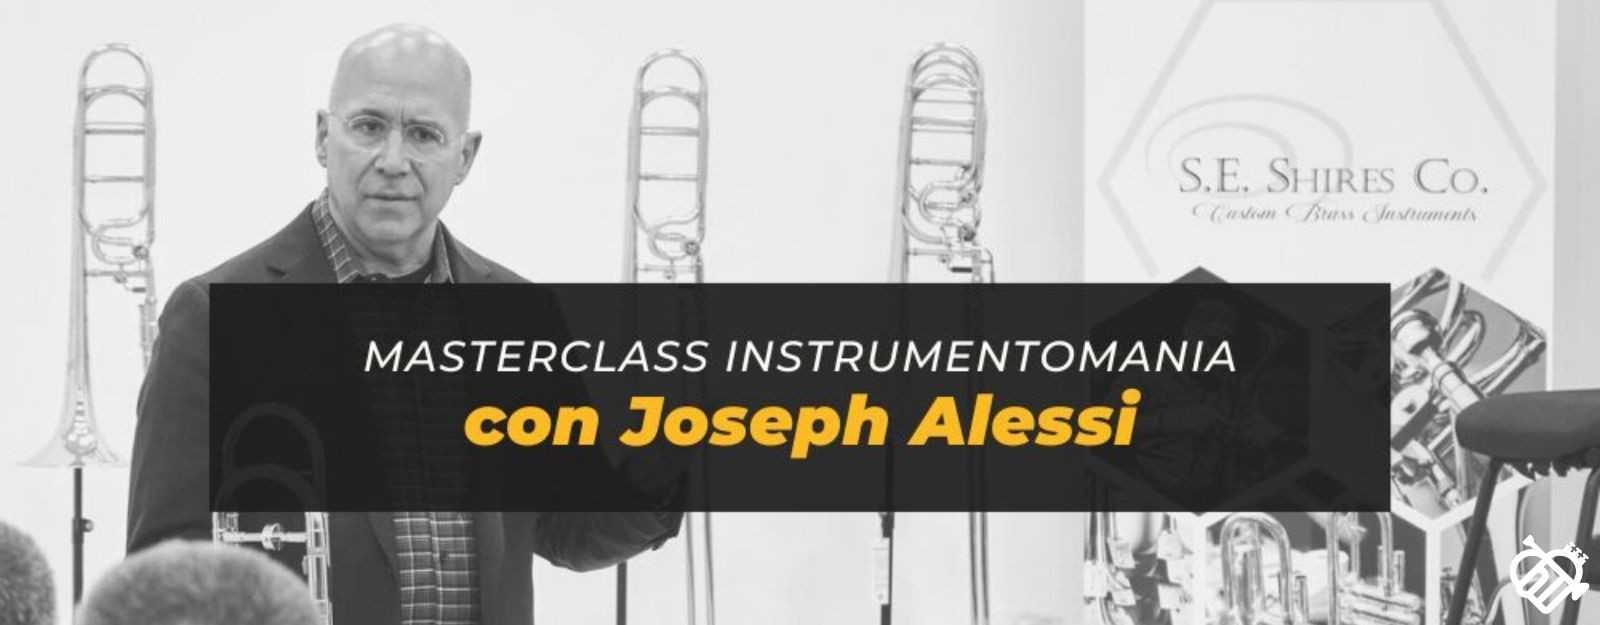 Joseph Alessi, trombón principal de la Filarmónica de Nueva York, impartirá una Masterclass en Instrumentomania el 14 de octubre